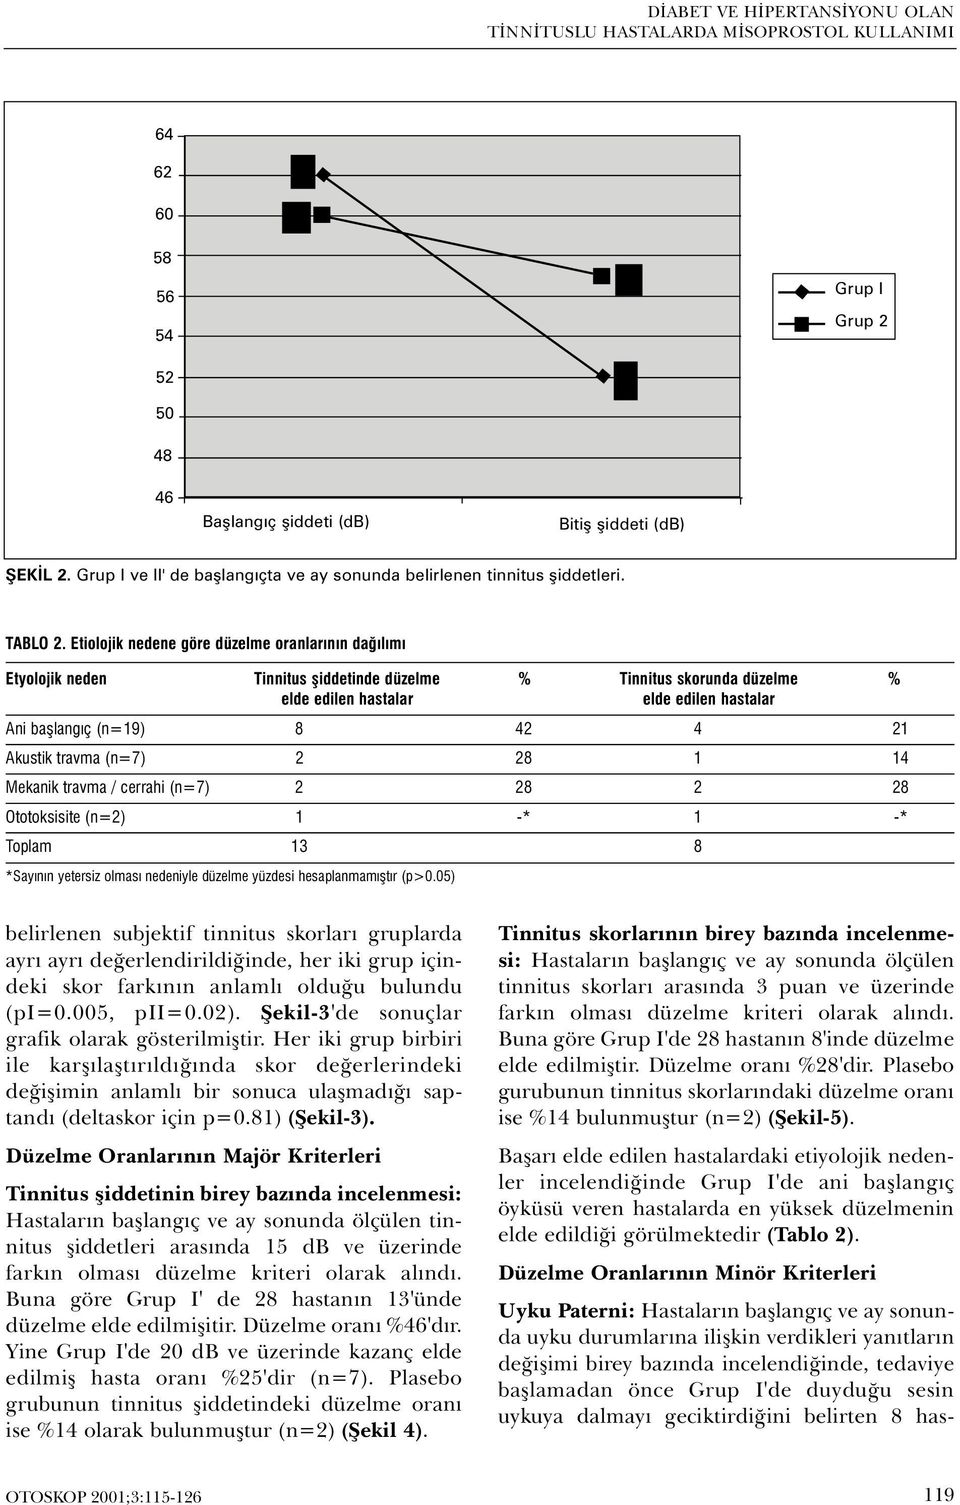 Etiolojik nedene göre düzelme oranlarýnýn daðýlýmý Etyolojik neden Tinnitus þiddetinde düzelme % Tinnitus skorunda düzelme % elde edilen hastalar elde edilen hastalar Ani baþlangýç (n=19) 8 42 4 21